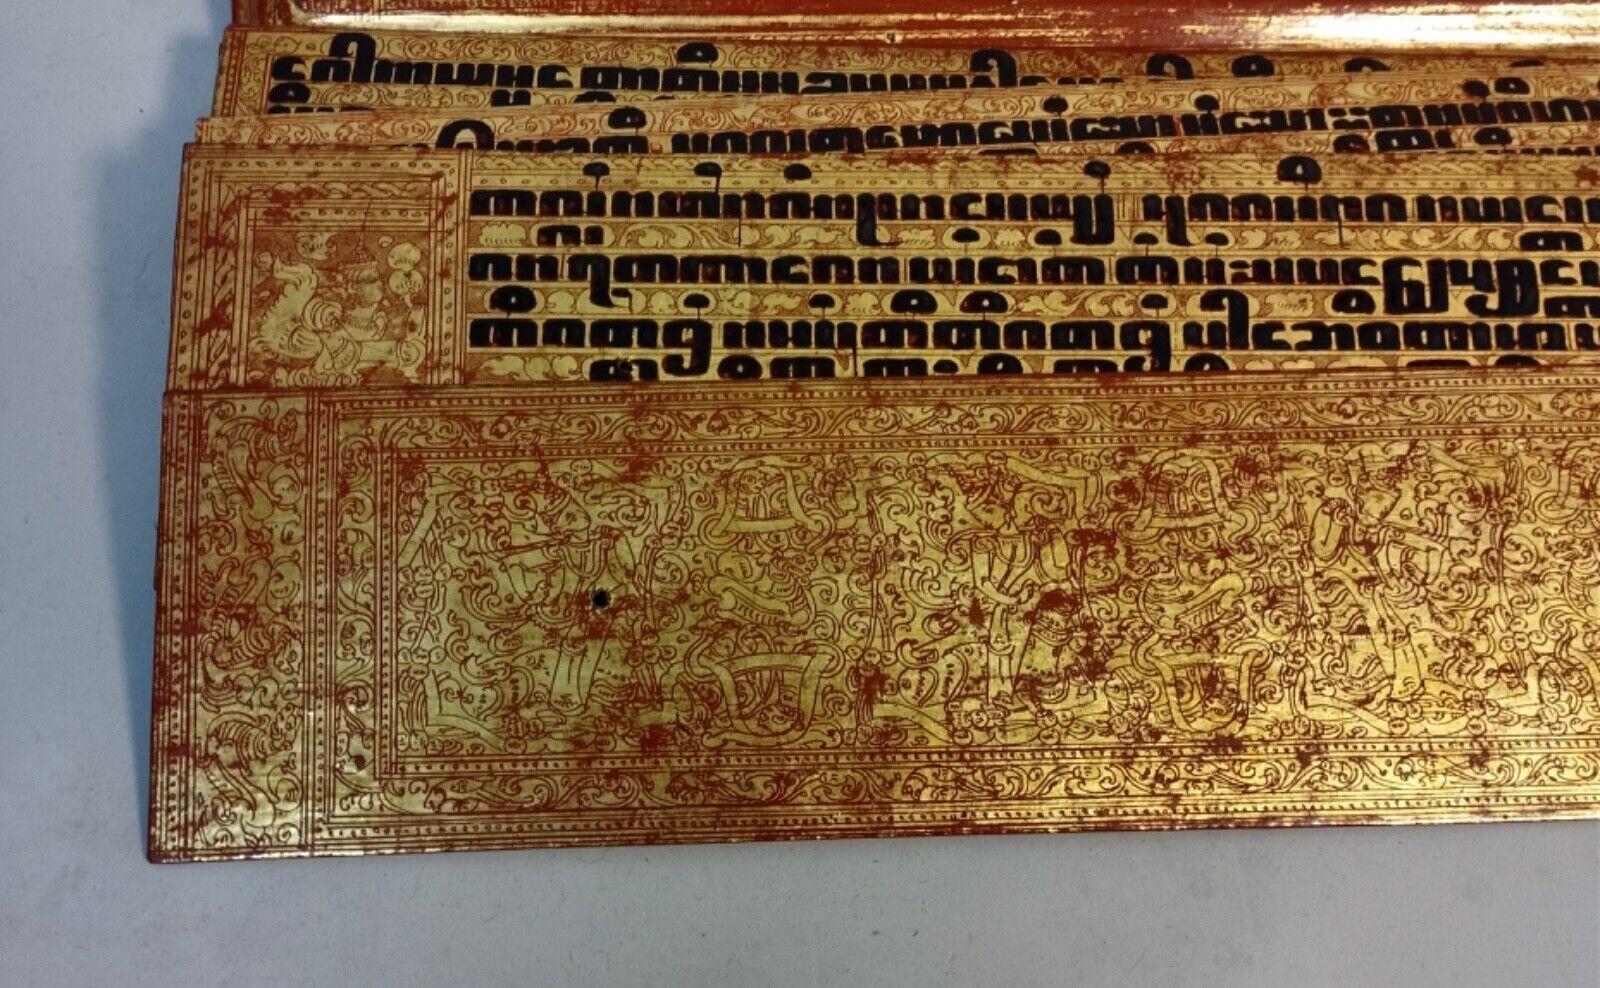 Einführung in ein exquisites und seltenes vergoldetes buddhistisches Manuskript

Dieses bemerkenswerte Stück ist ein wahrhaft außergewöhnlicher Fund - ein vergoldetes buddhistisches Manuskript von großer Schönheit und Seltenheit. Das Manuskript